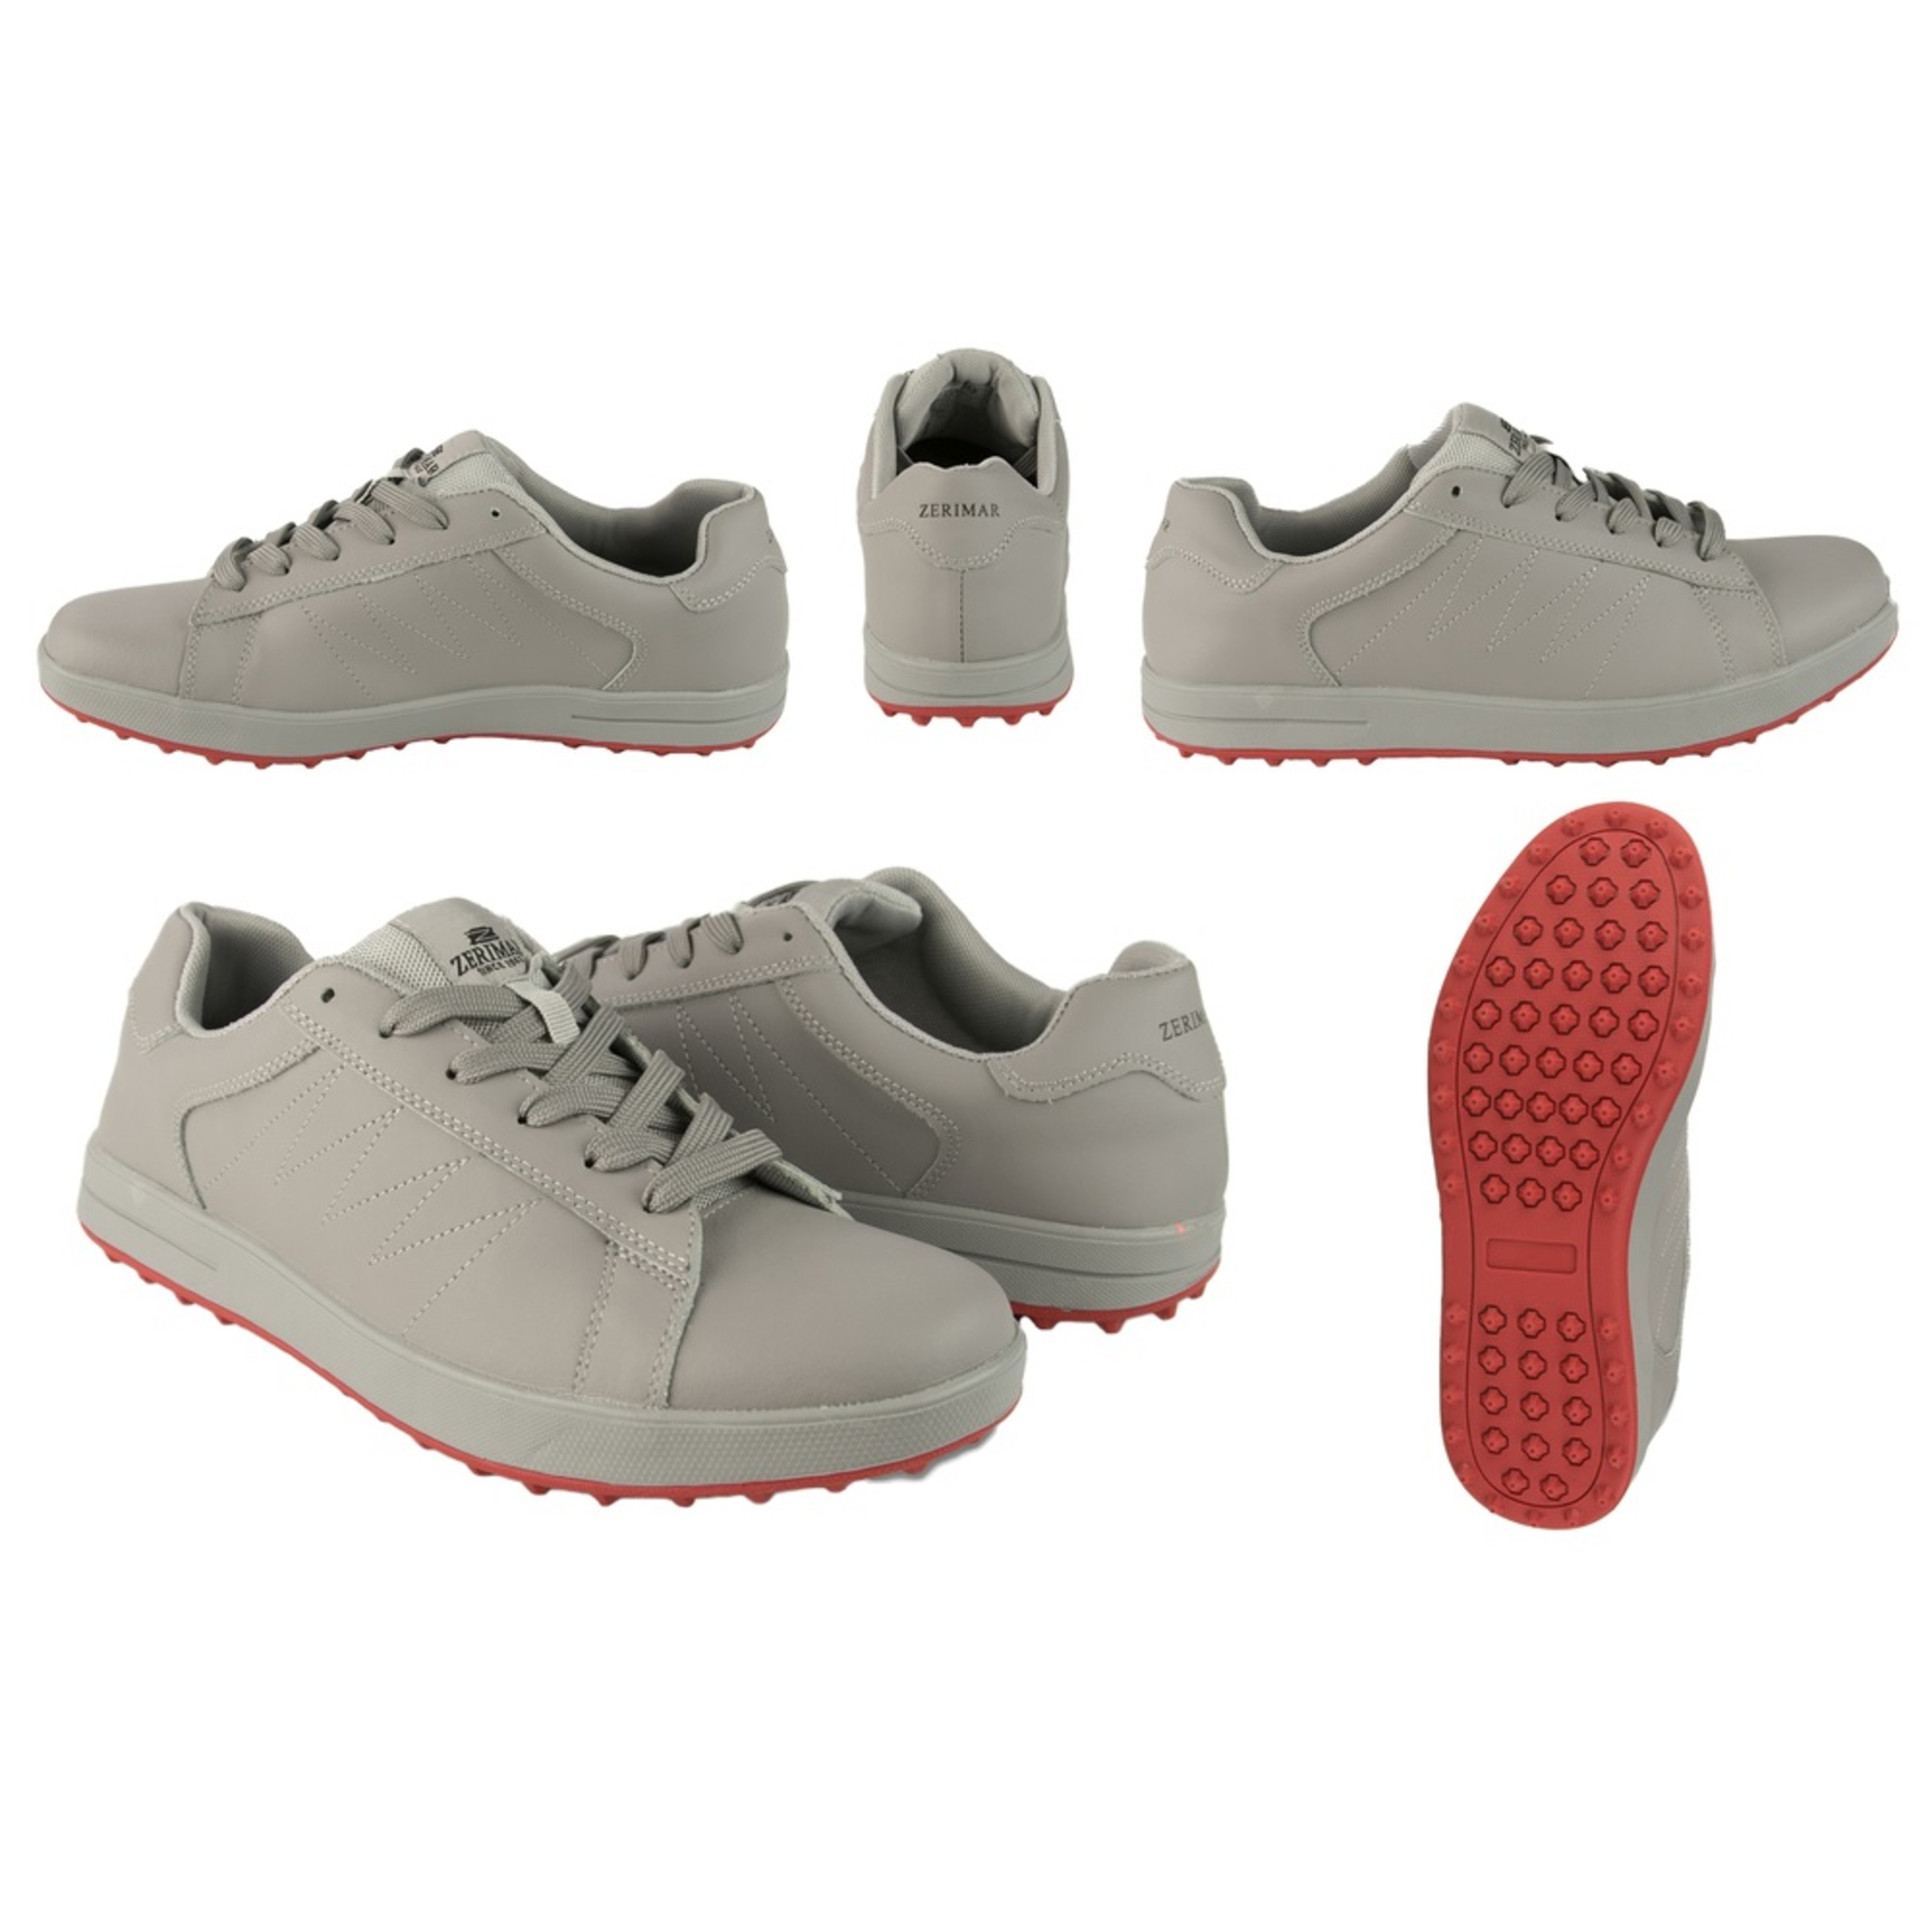 Sapatos De Golfe Masculino Sapatos Desportivos Sapatos De Couro - Cinzento - Sapatos de golfe para homens sapatos de couro | Sport Zone MKP